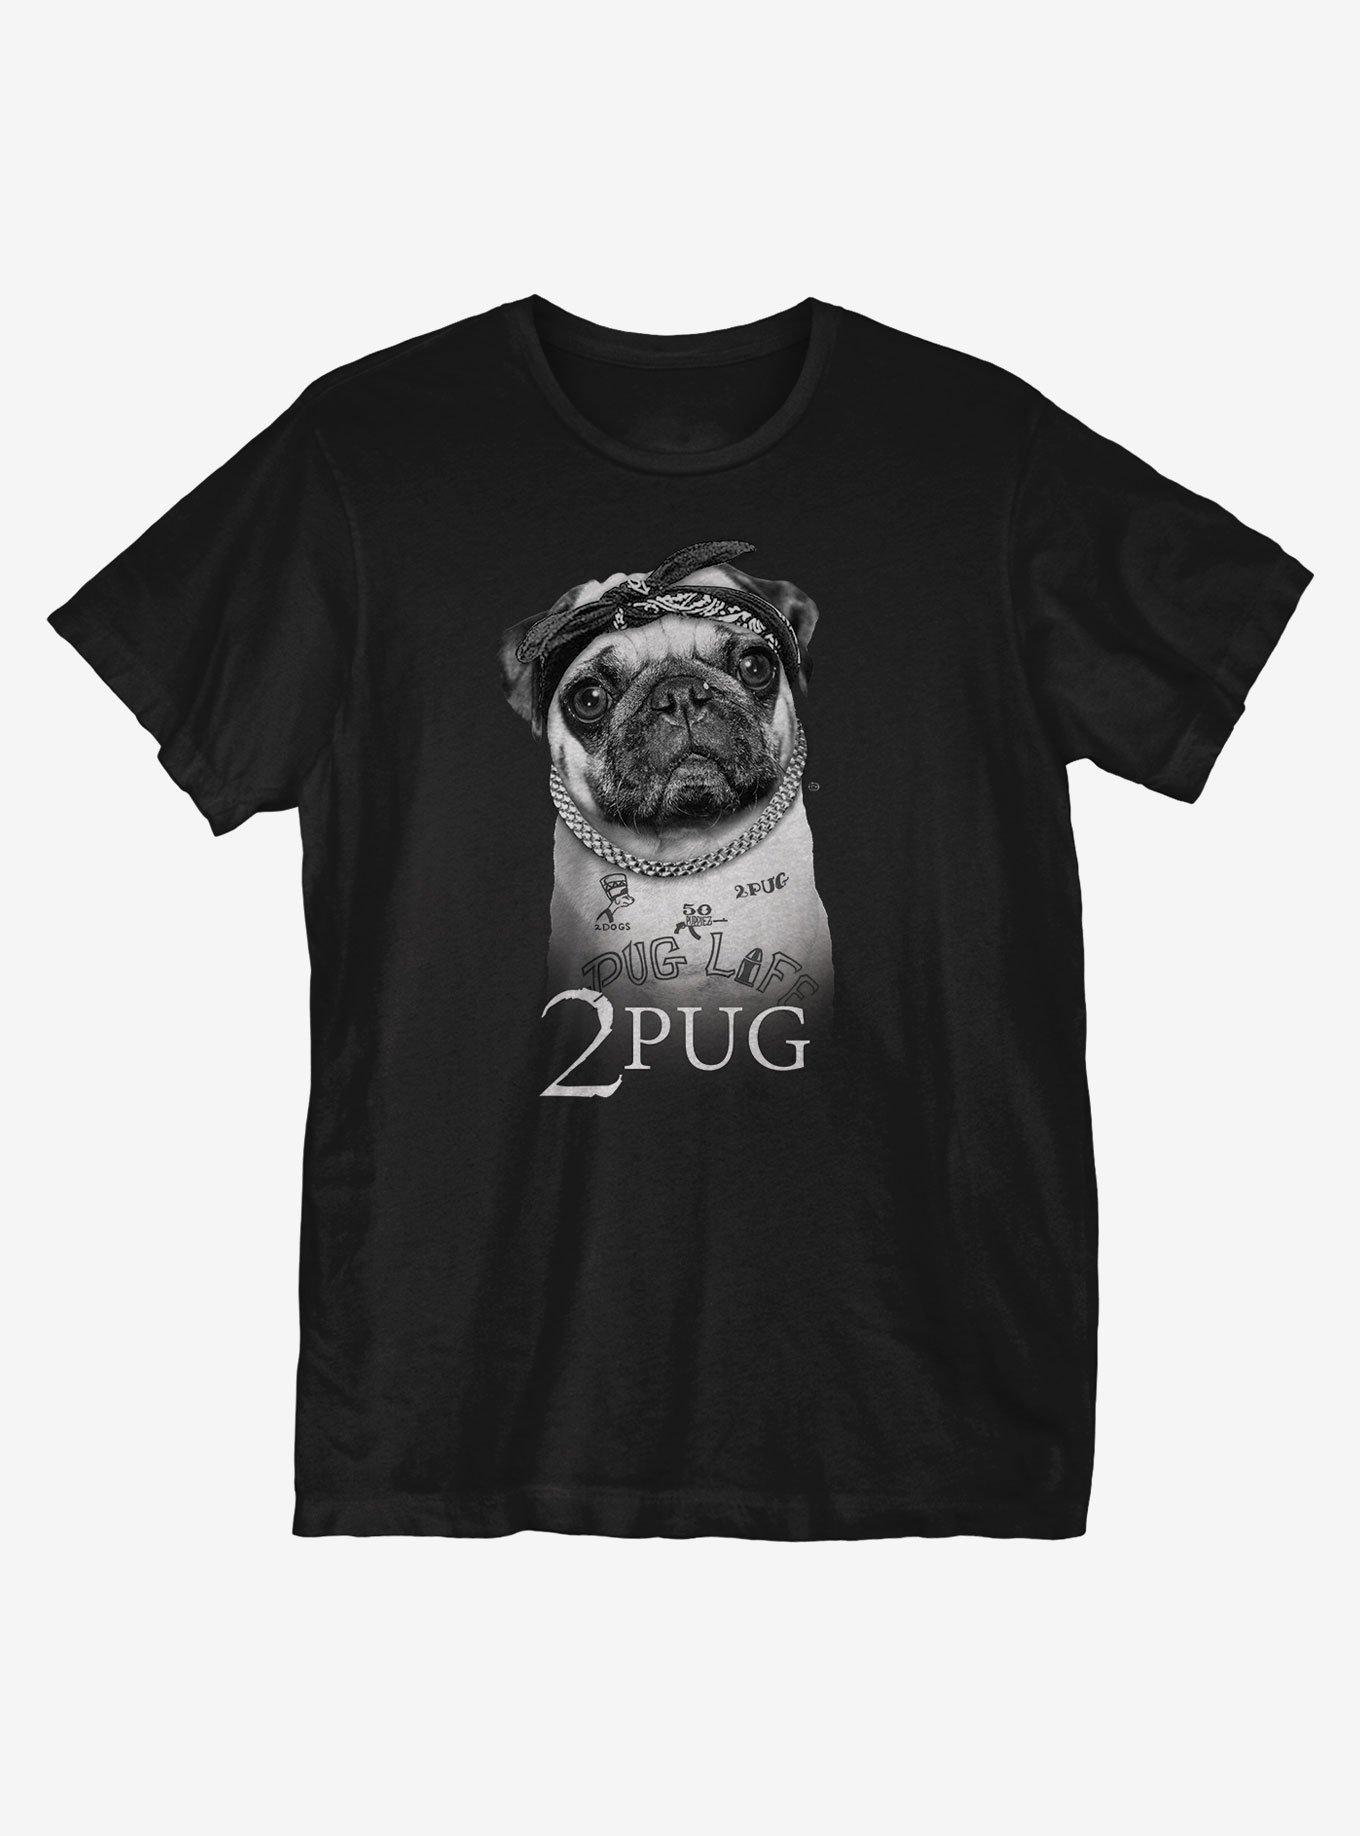 2Pug Shakur T-Shirt, BLACK, hi-res